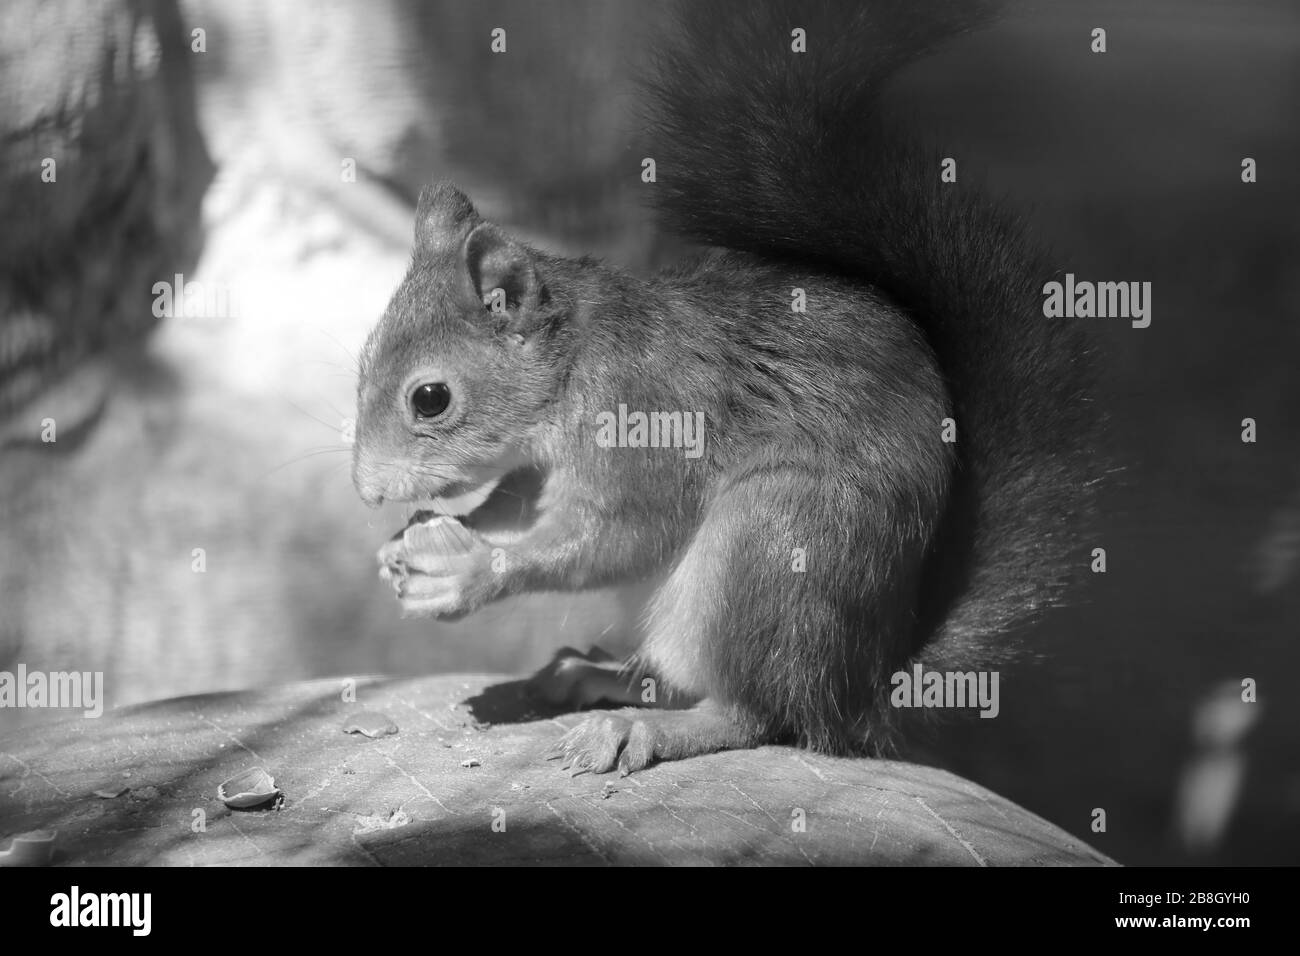 Uno scoiattolo si siede su una pietra e mangia un dado. Foto in bianco e nero Foto Stock